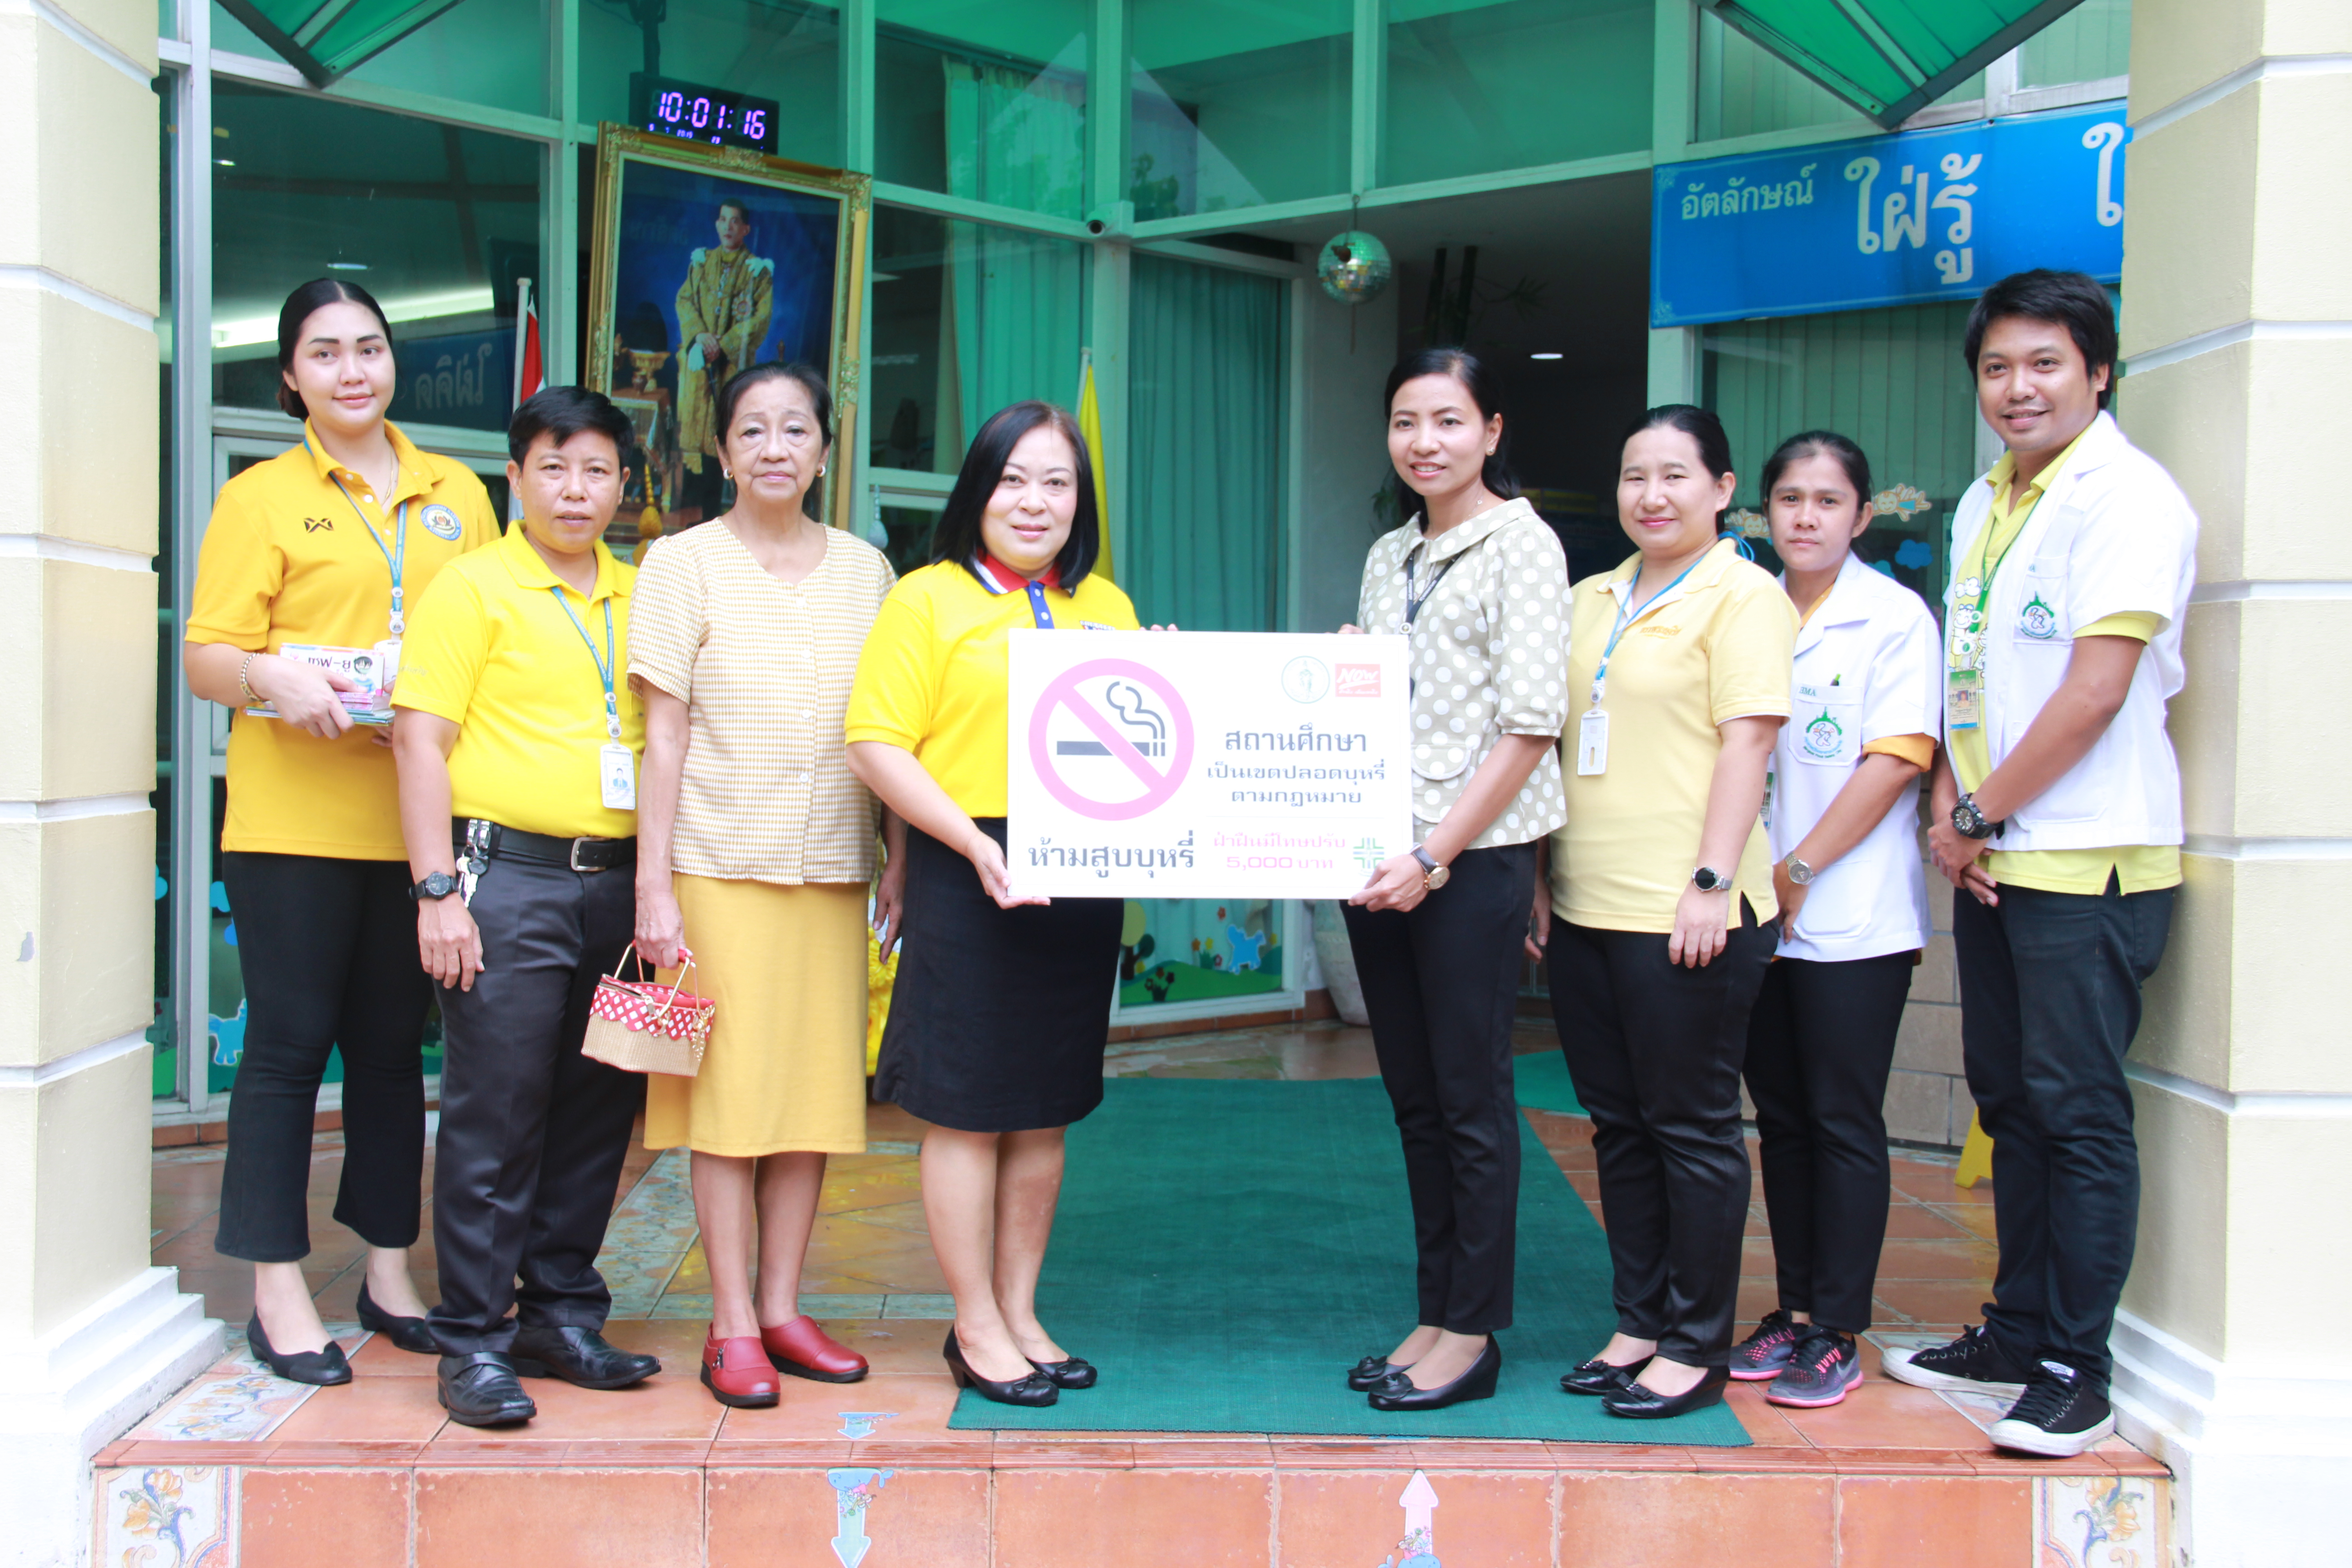 ได้รับรางวัลมาตรฐานระดับดี โครงการ กรุงเทพฯ เมืองอาหารปลอดภัย (Bangkok Food Safety City)